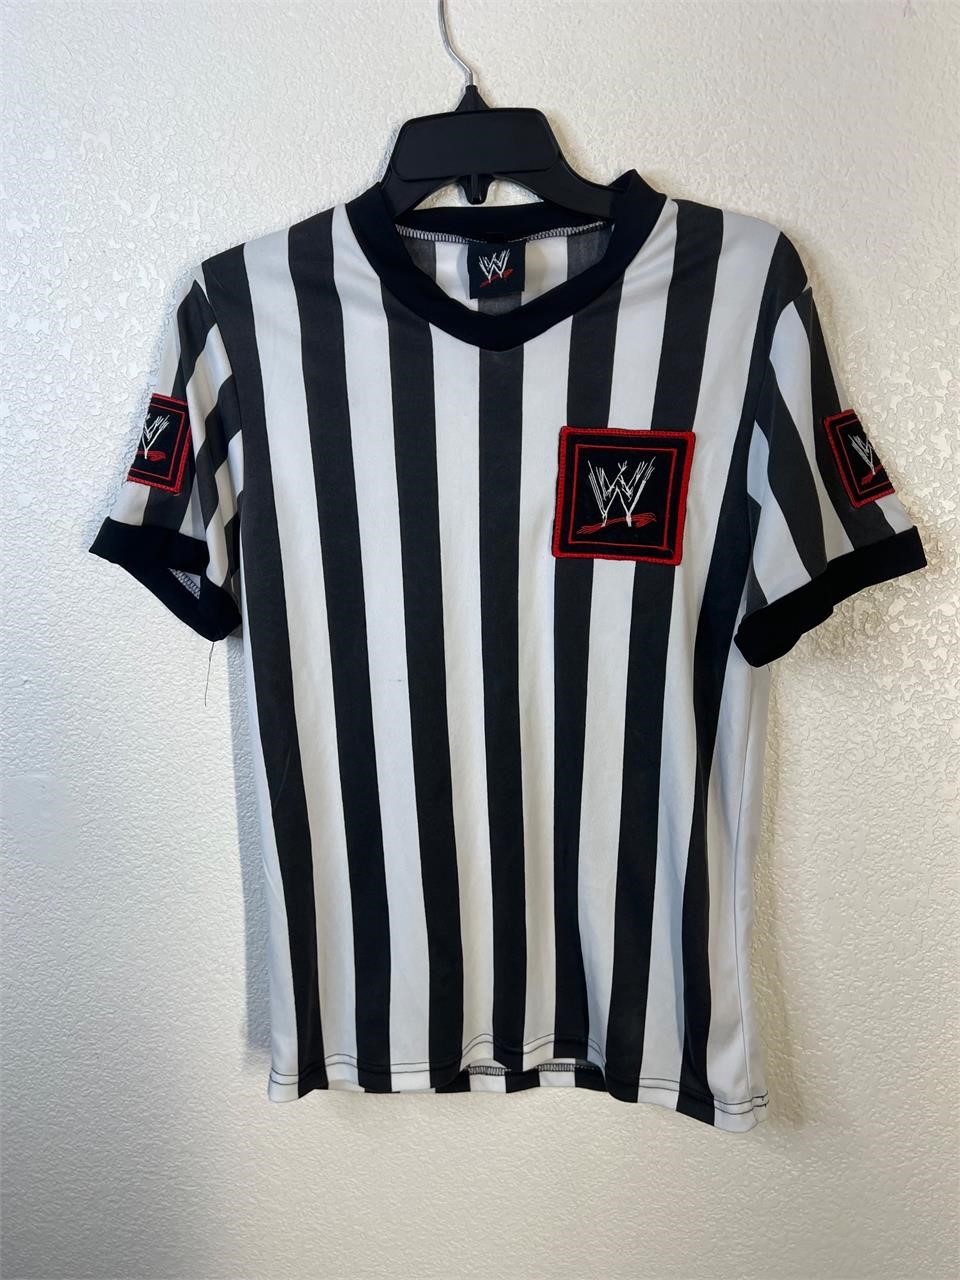 WWE Monday Night Raw Referee Shirt